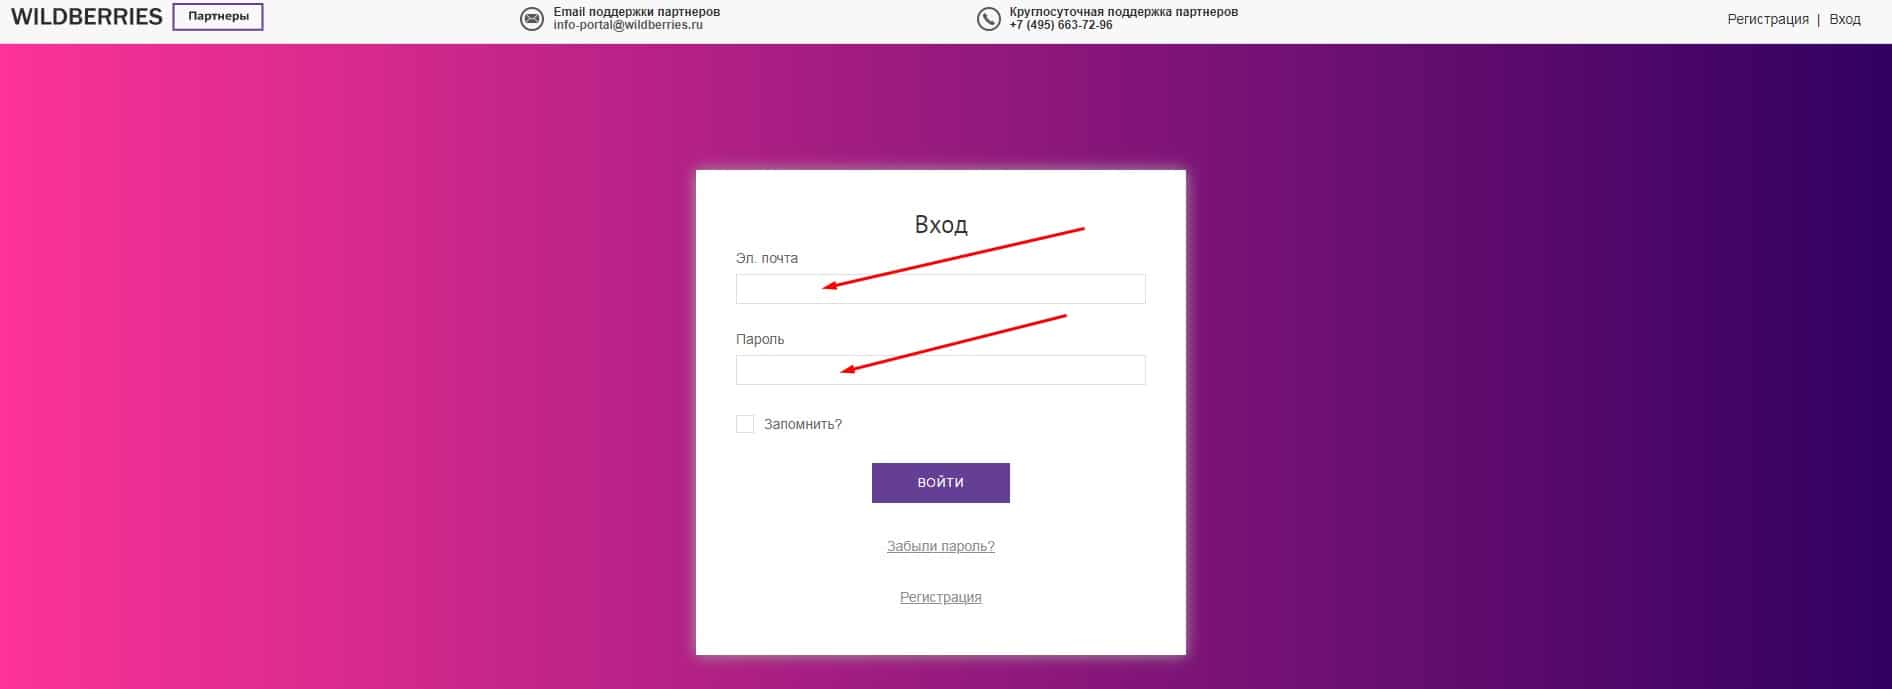 Waldberris Ru Интернет Магазин Официальный Регистрация